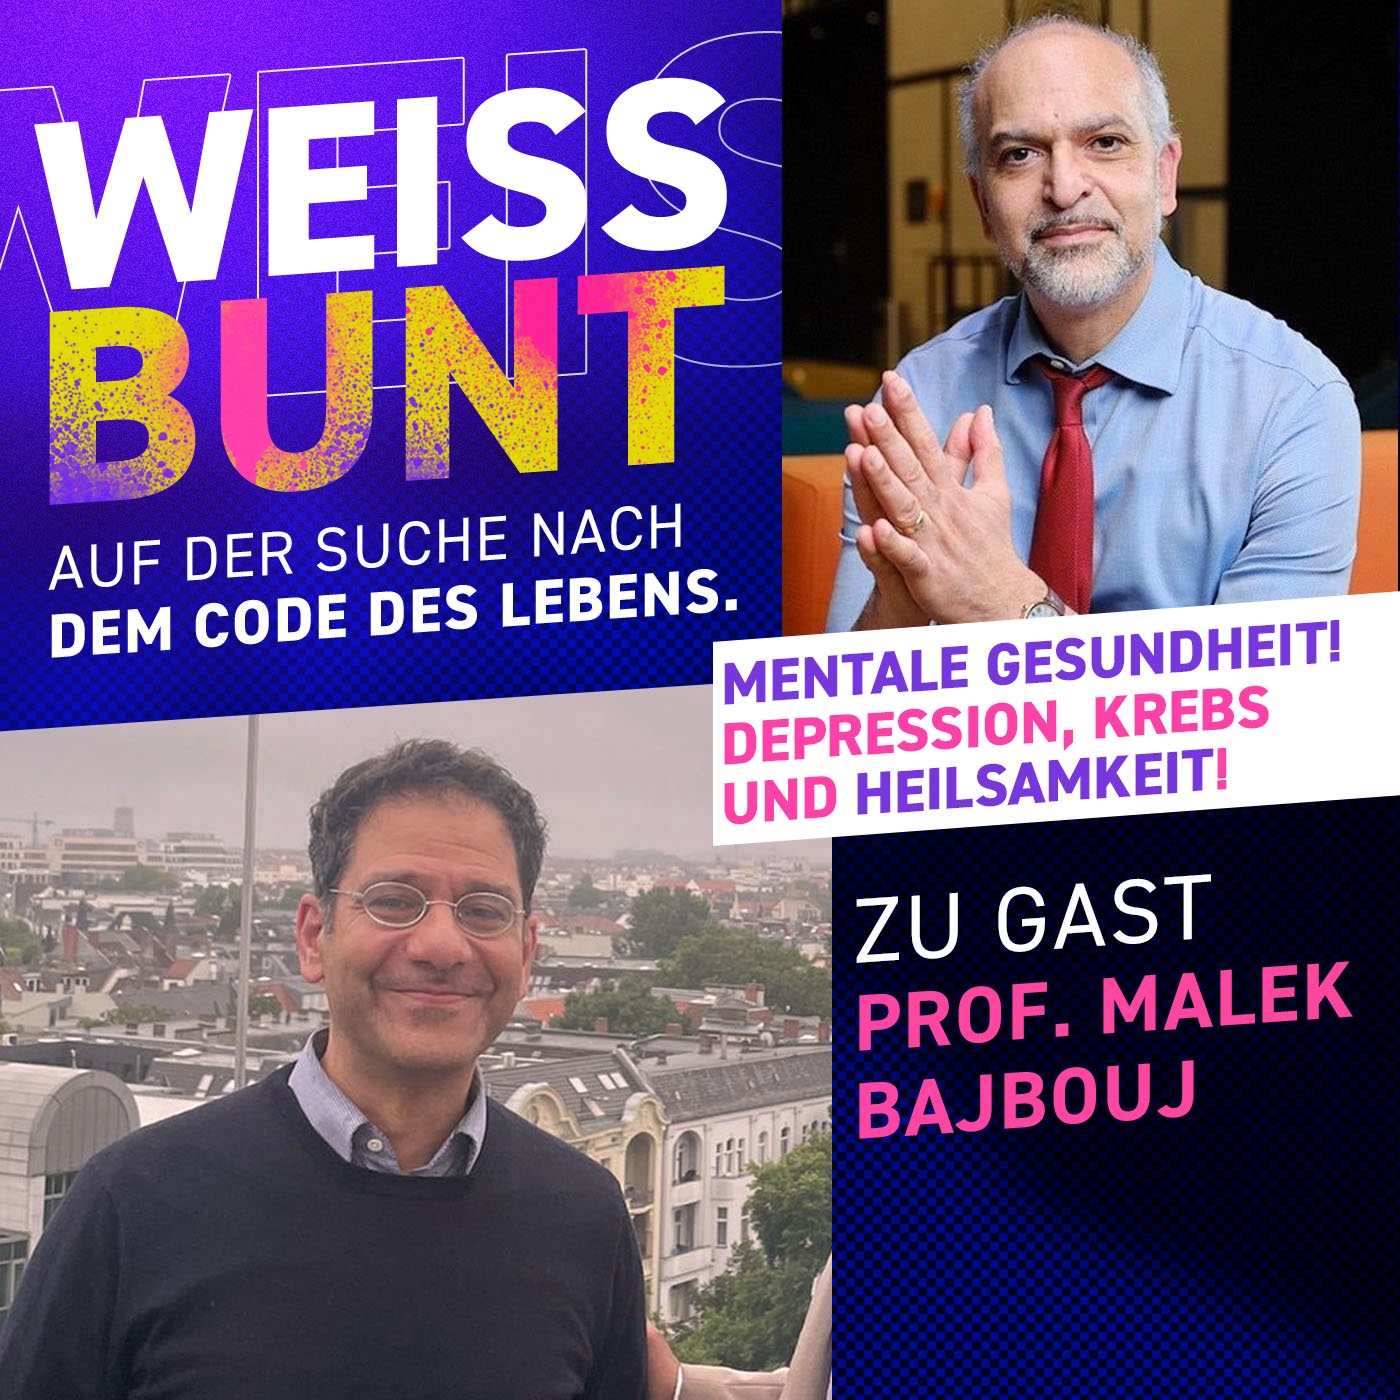 Depression, Krebs und Heilsamkeit! Prof. Bajbouj zu Gast bei WeissBunt